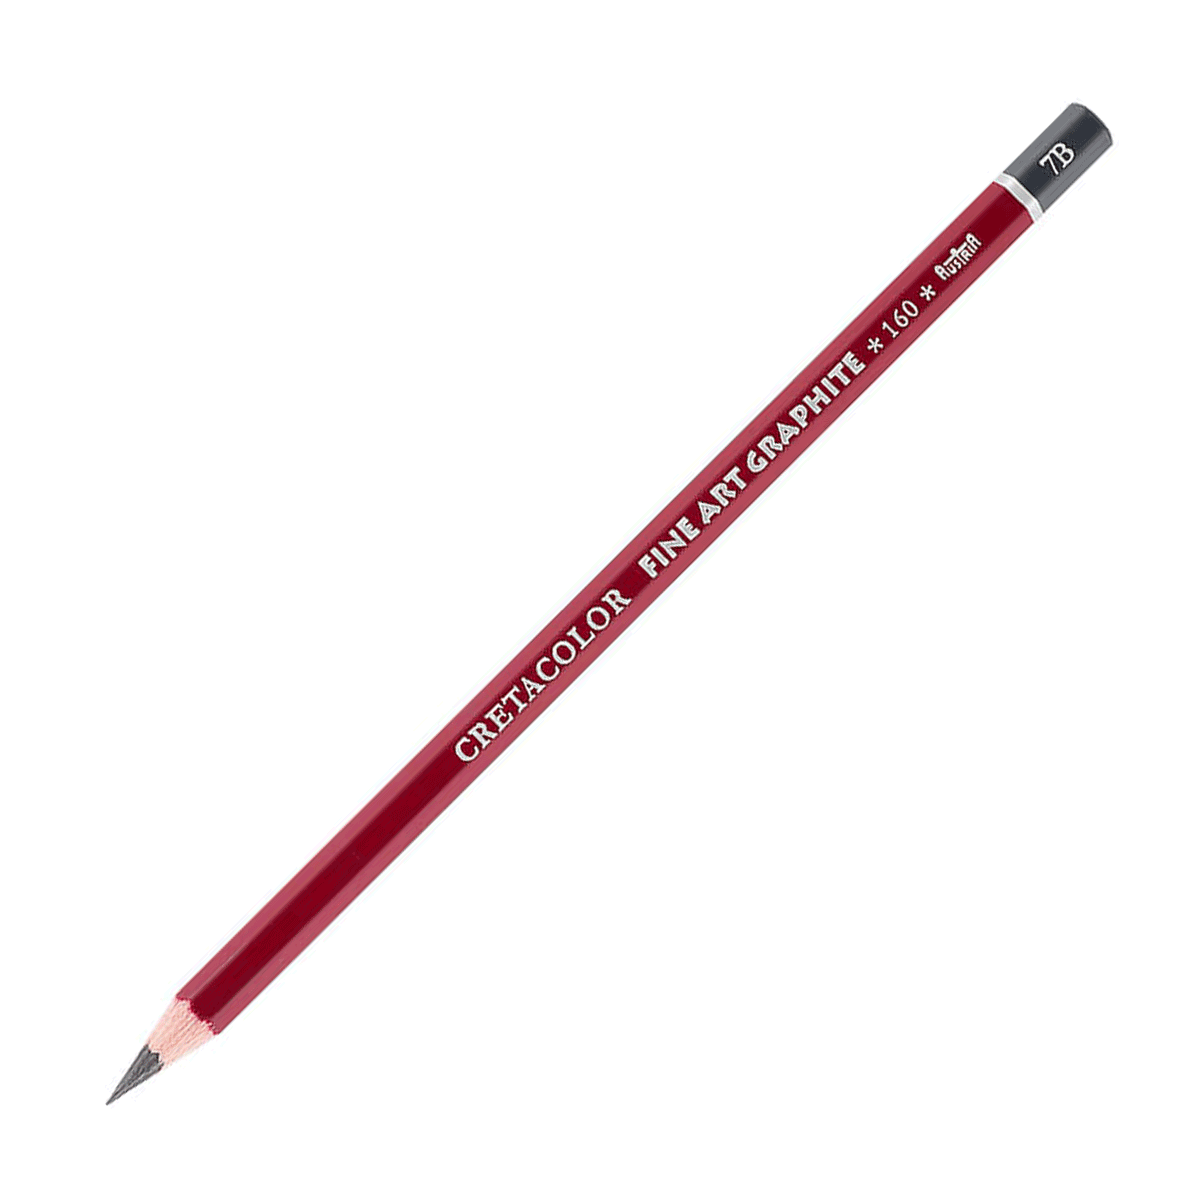 Cretacolor Fine Art Red Graphite Pencil - 7B